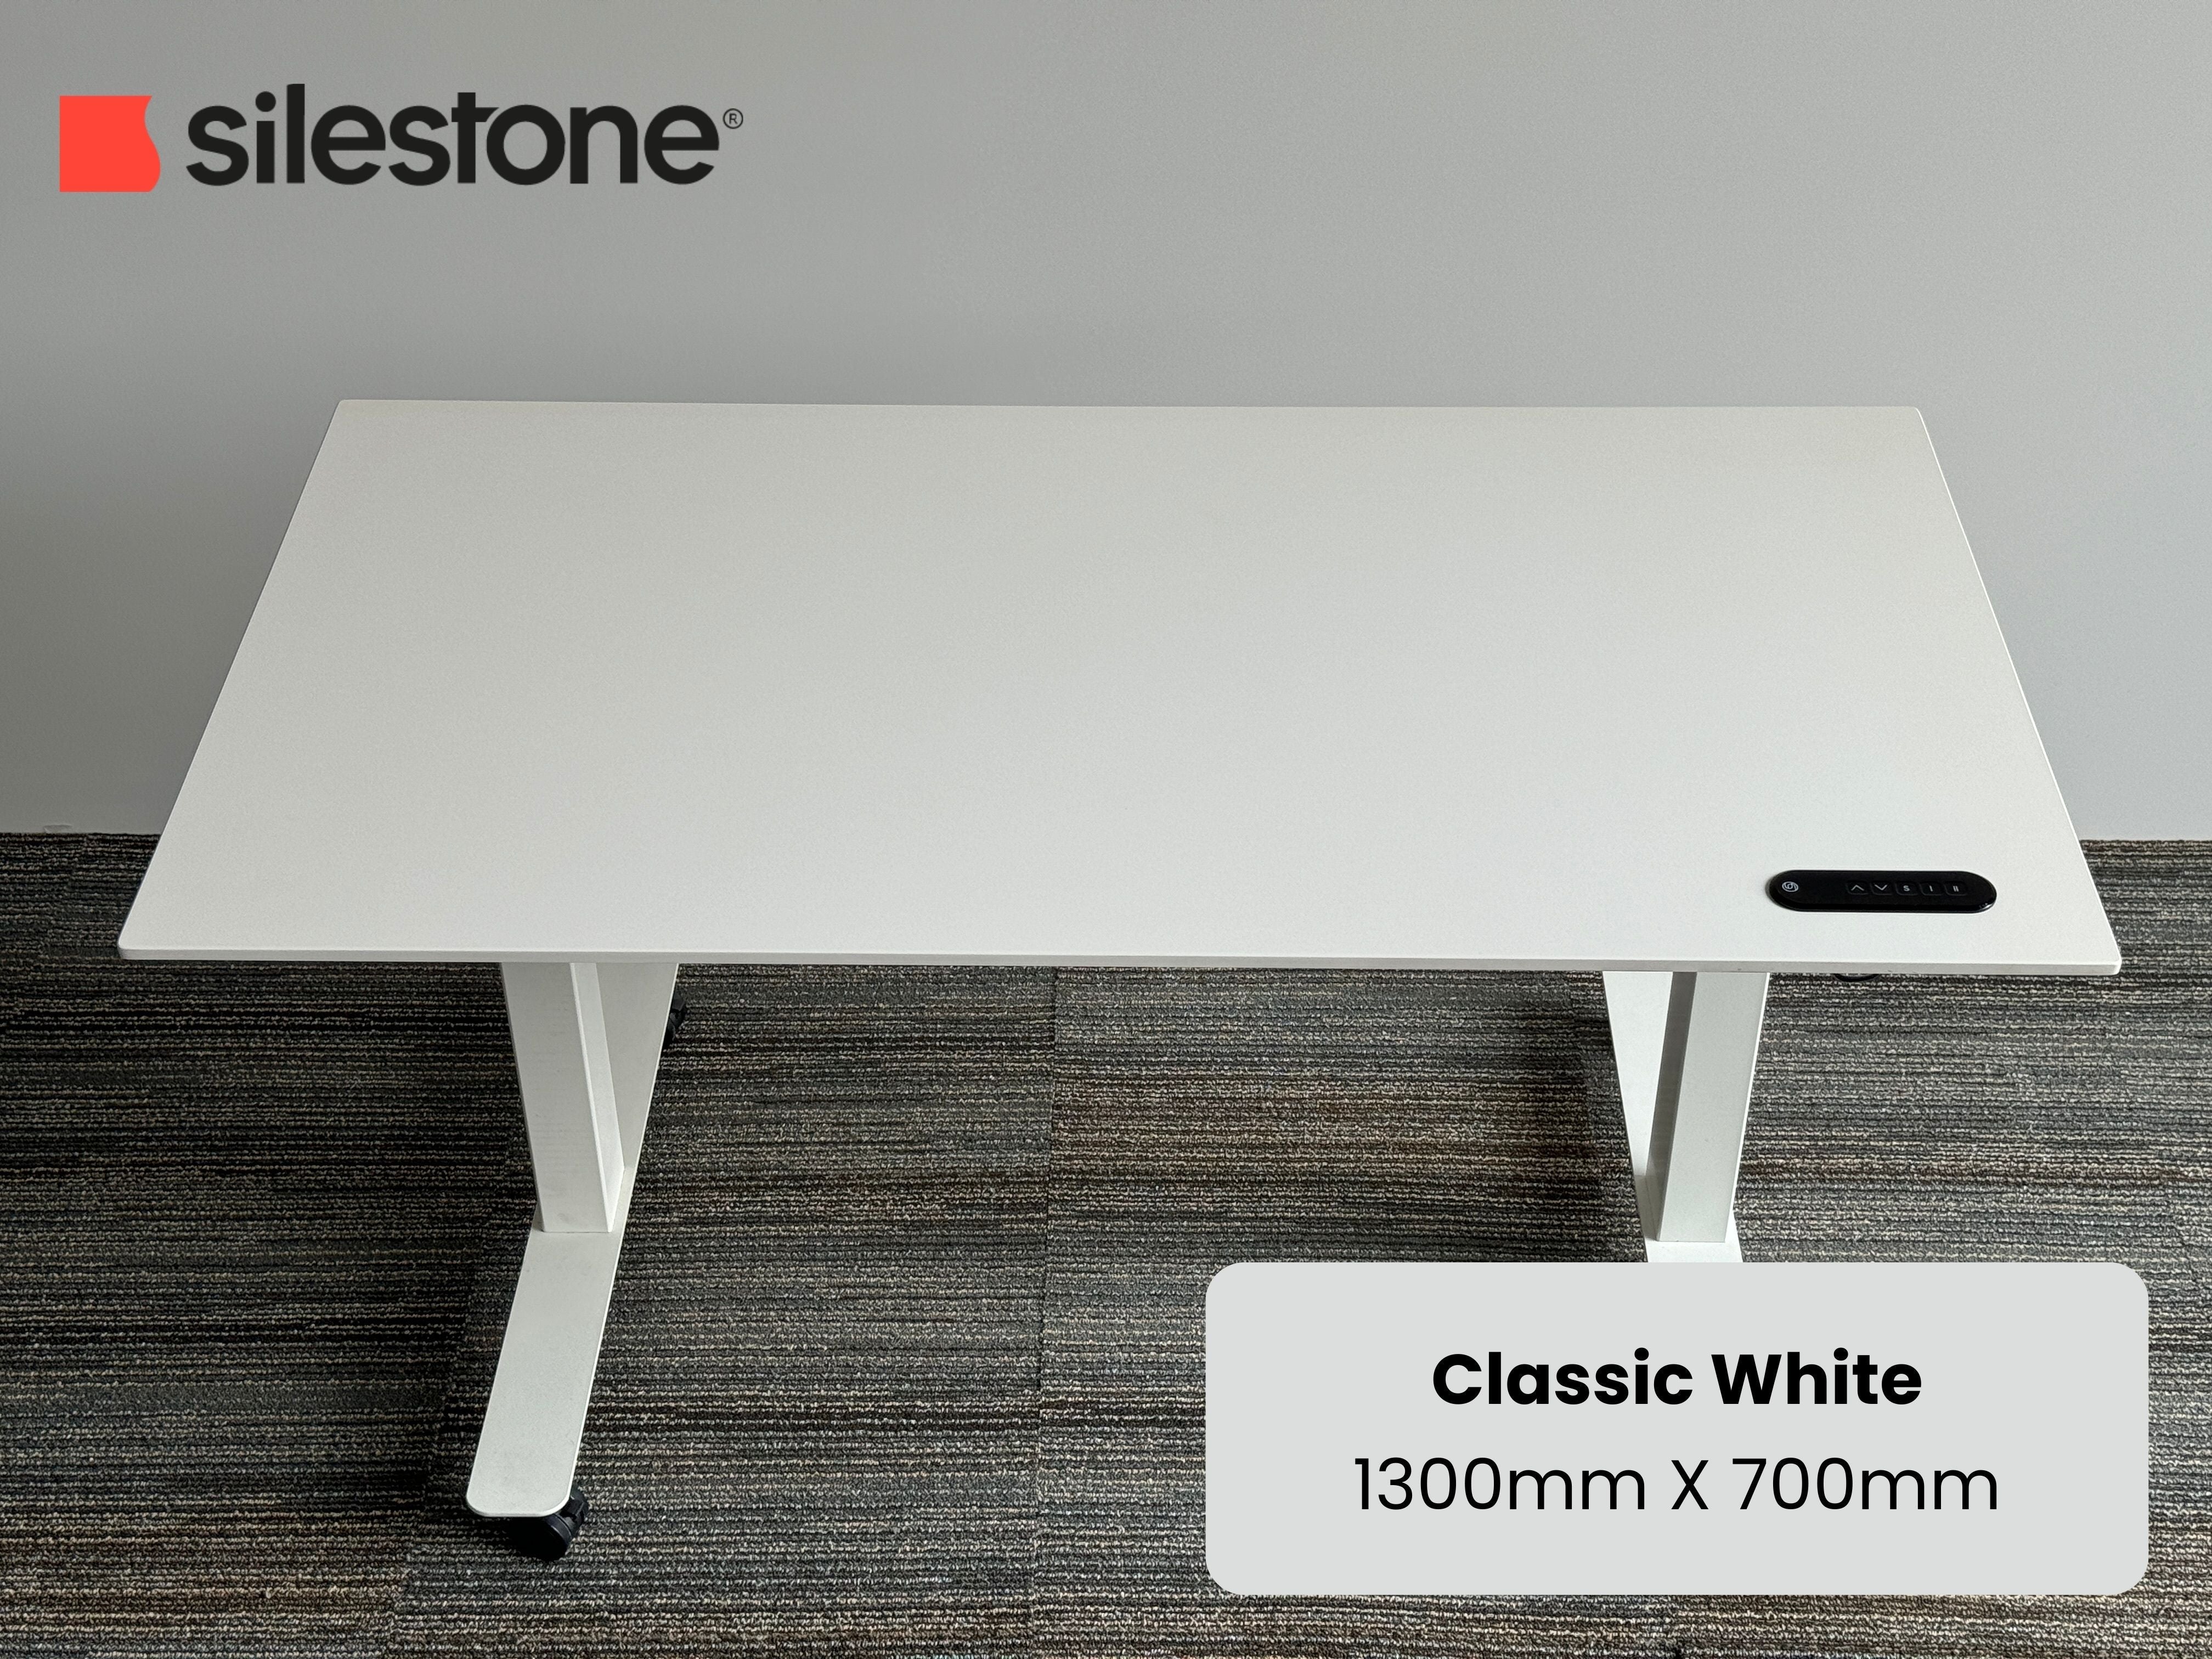 Classic White Silestone Standing Desk